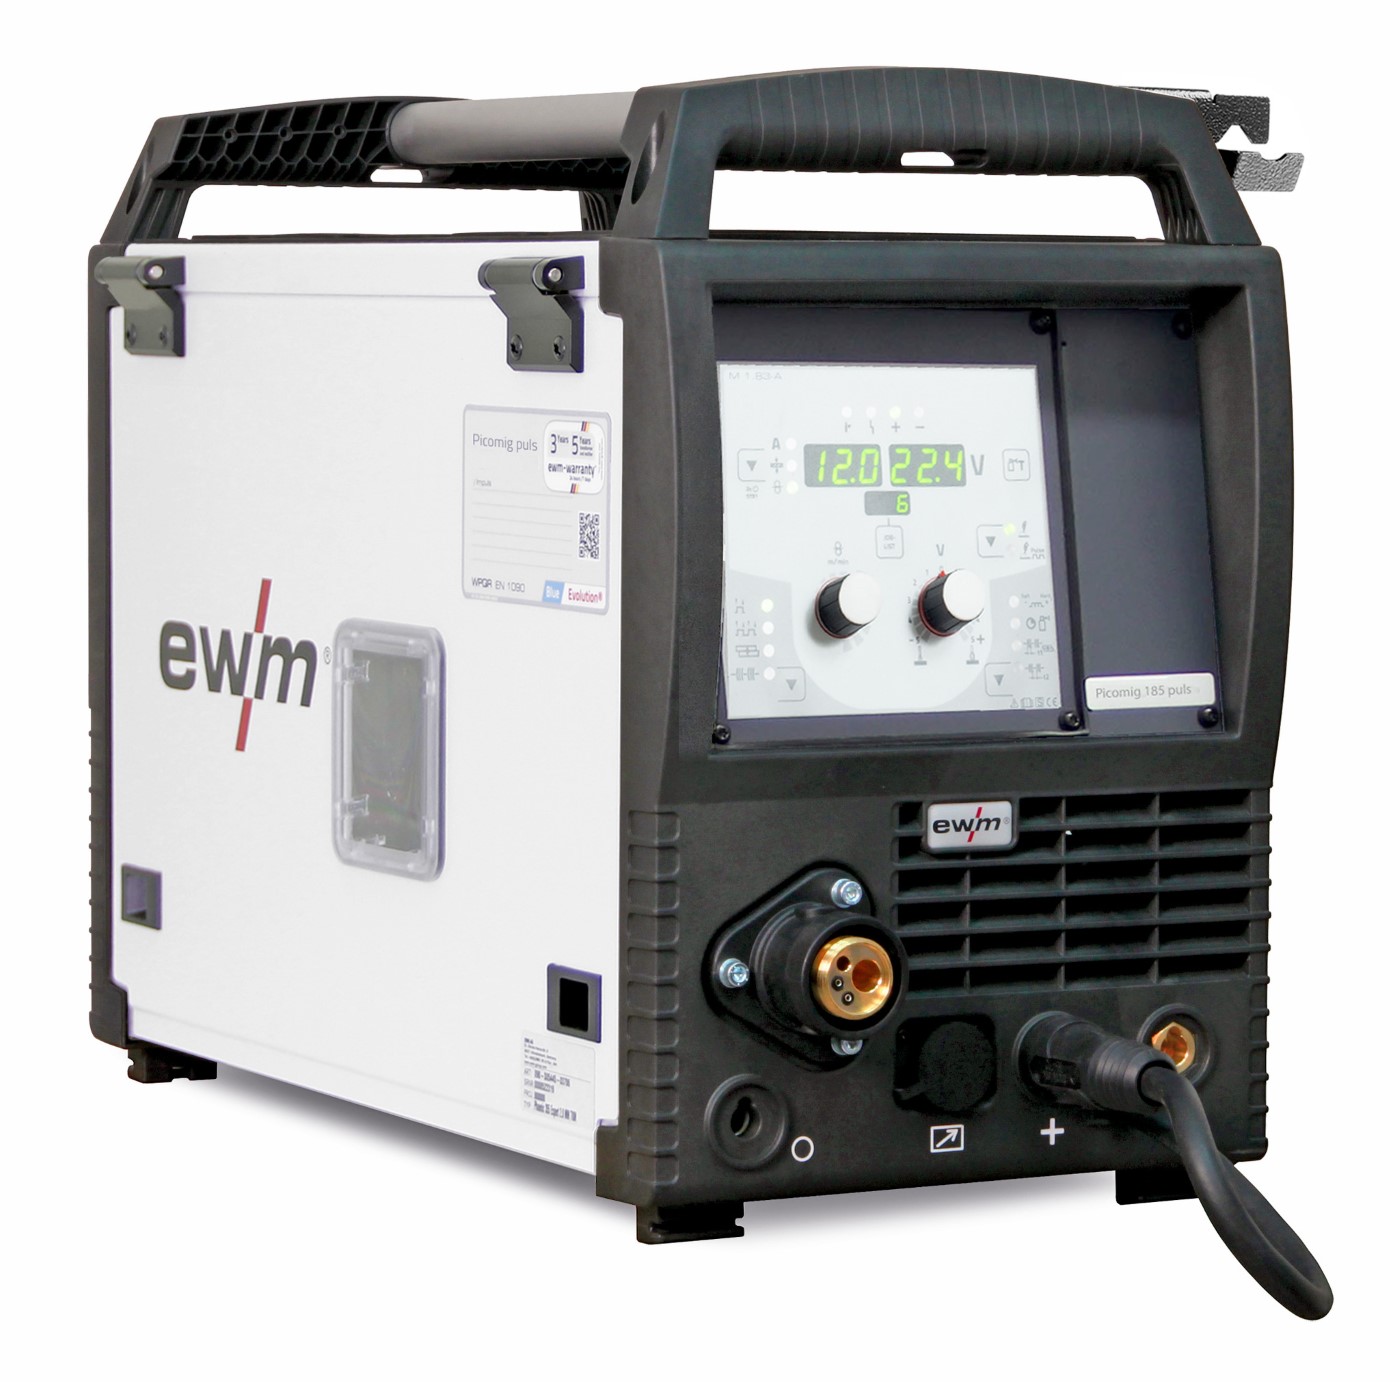 EWM suvirinimo pusautomatis Picomig 305 puls TKM, 300A, 400V